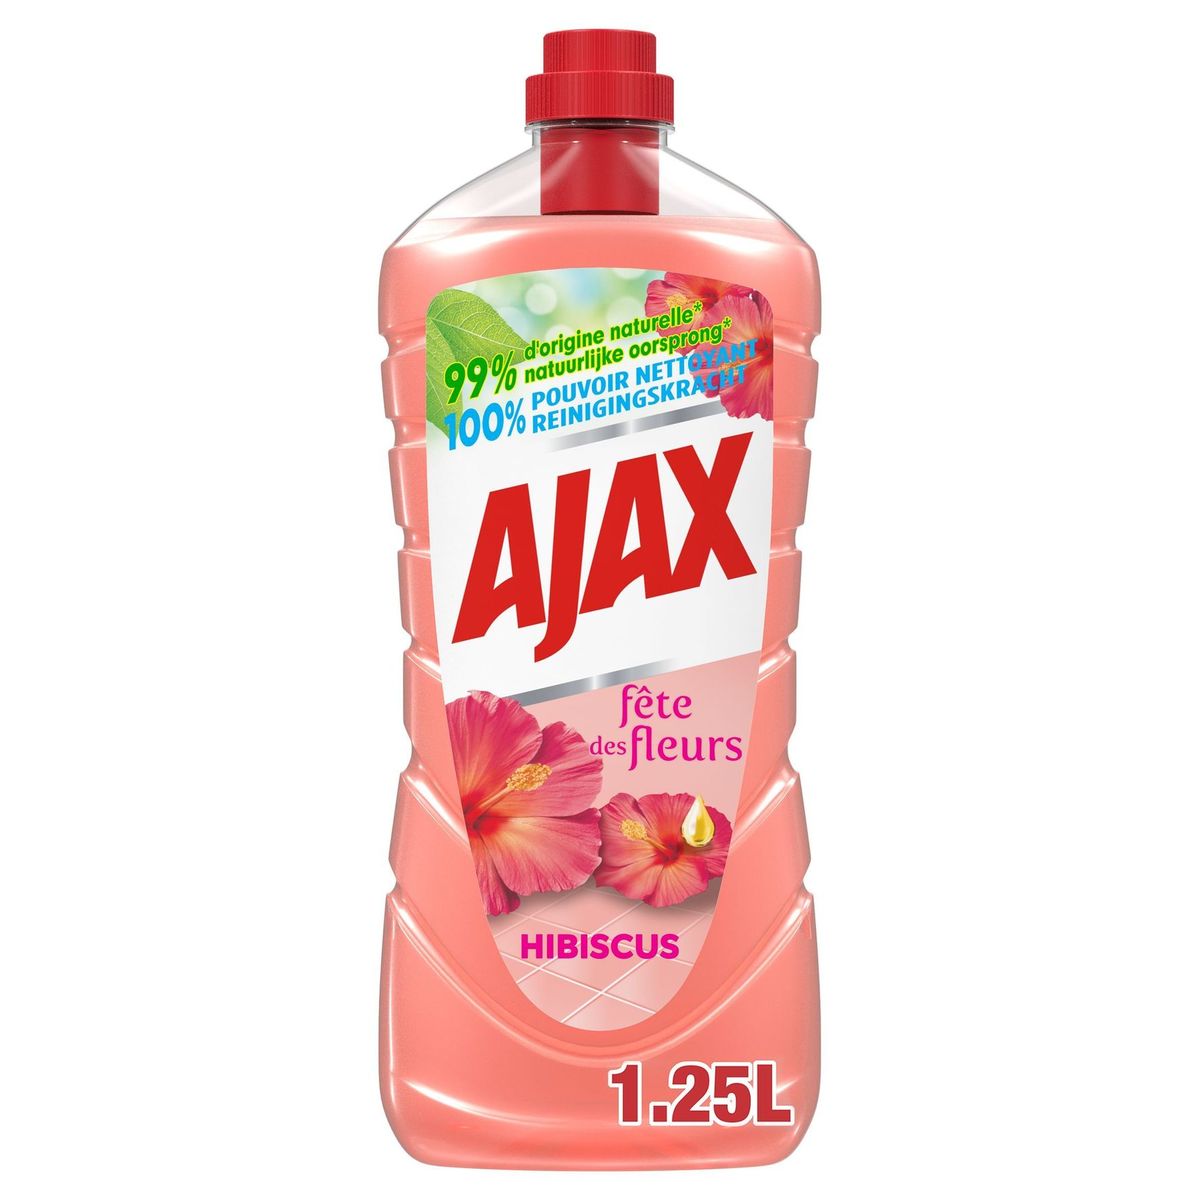 Ajax Fête des Fleurs Hibiscus allesreiniger - 1.25L